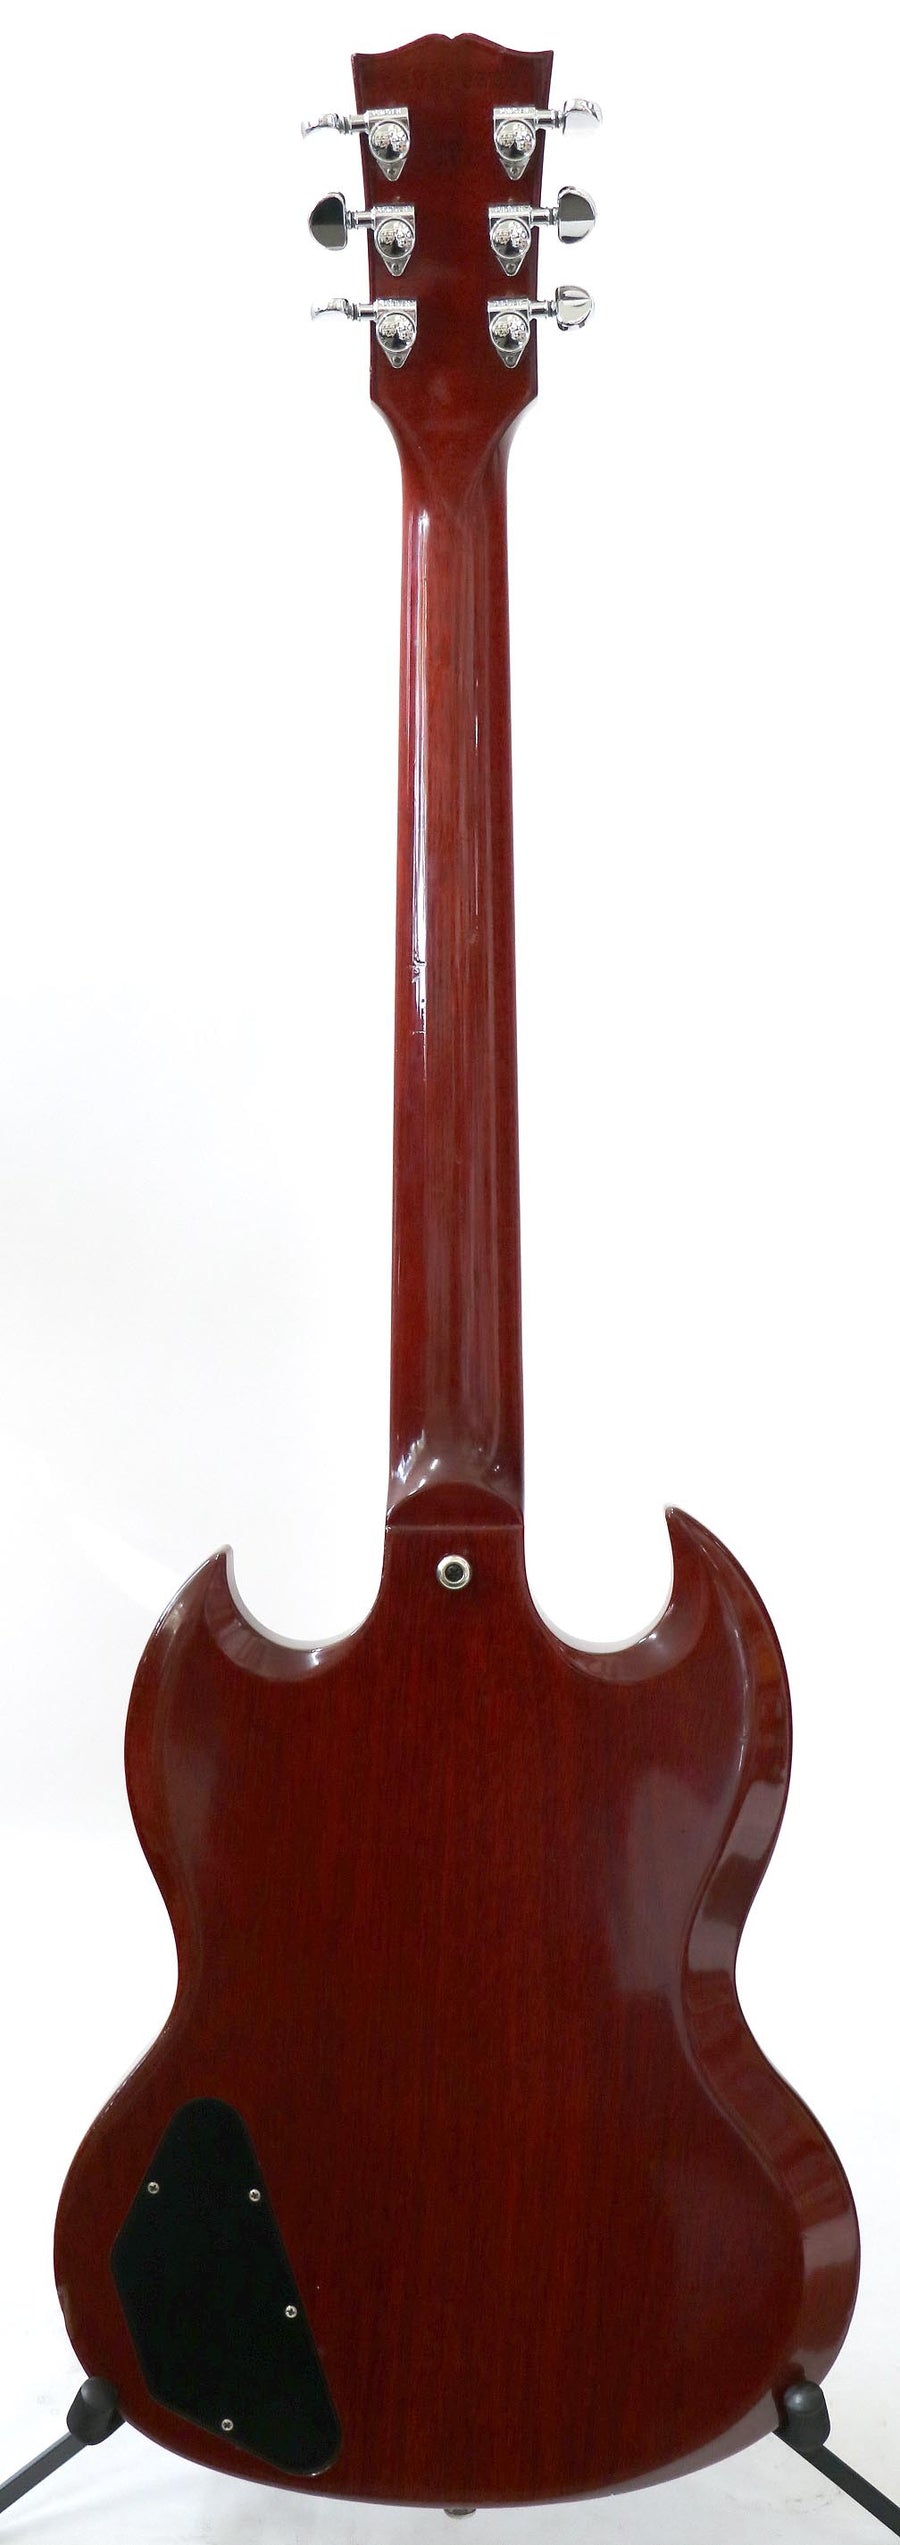 Gibson SG Standard 2007